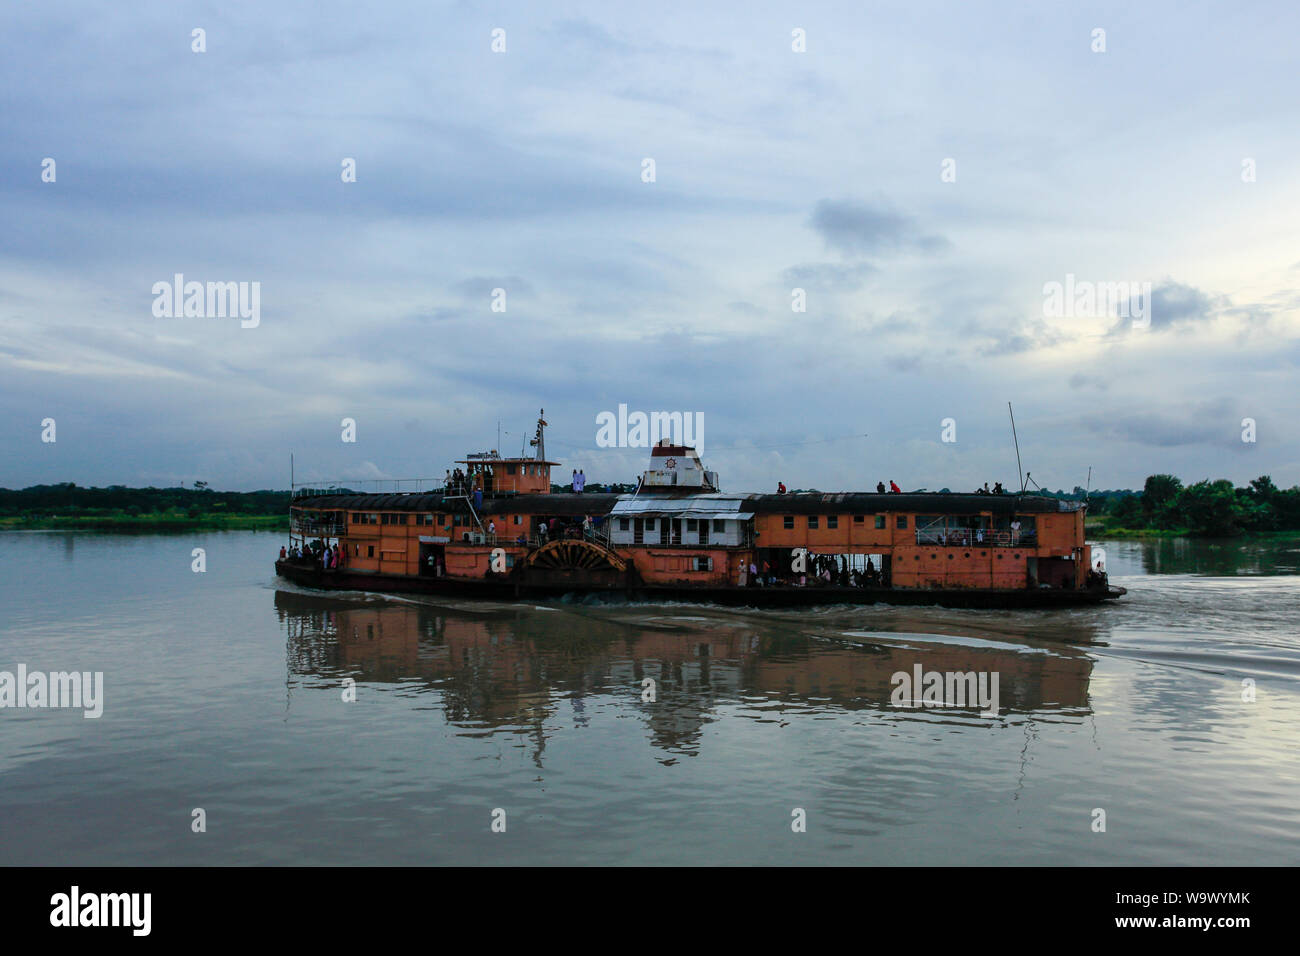 PS Lepcha, 80 anni il battello a vapore sul Fiume Sugondha Jhalakathi nel distretto del Bangladesh. Essa è stata costruita da Dumbarton-società di Wil Foto Stock